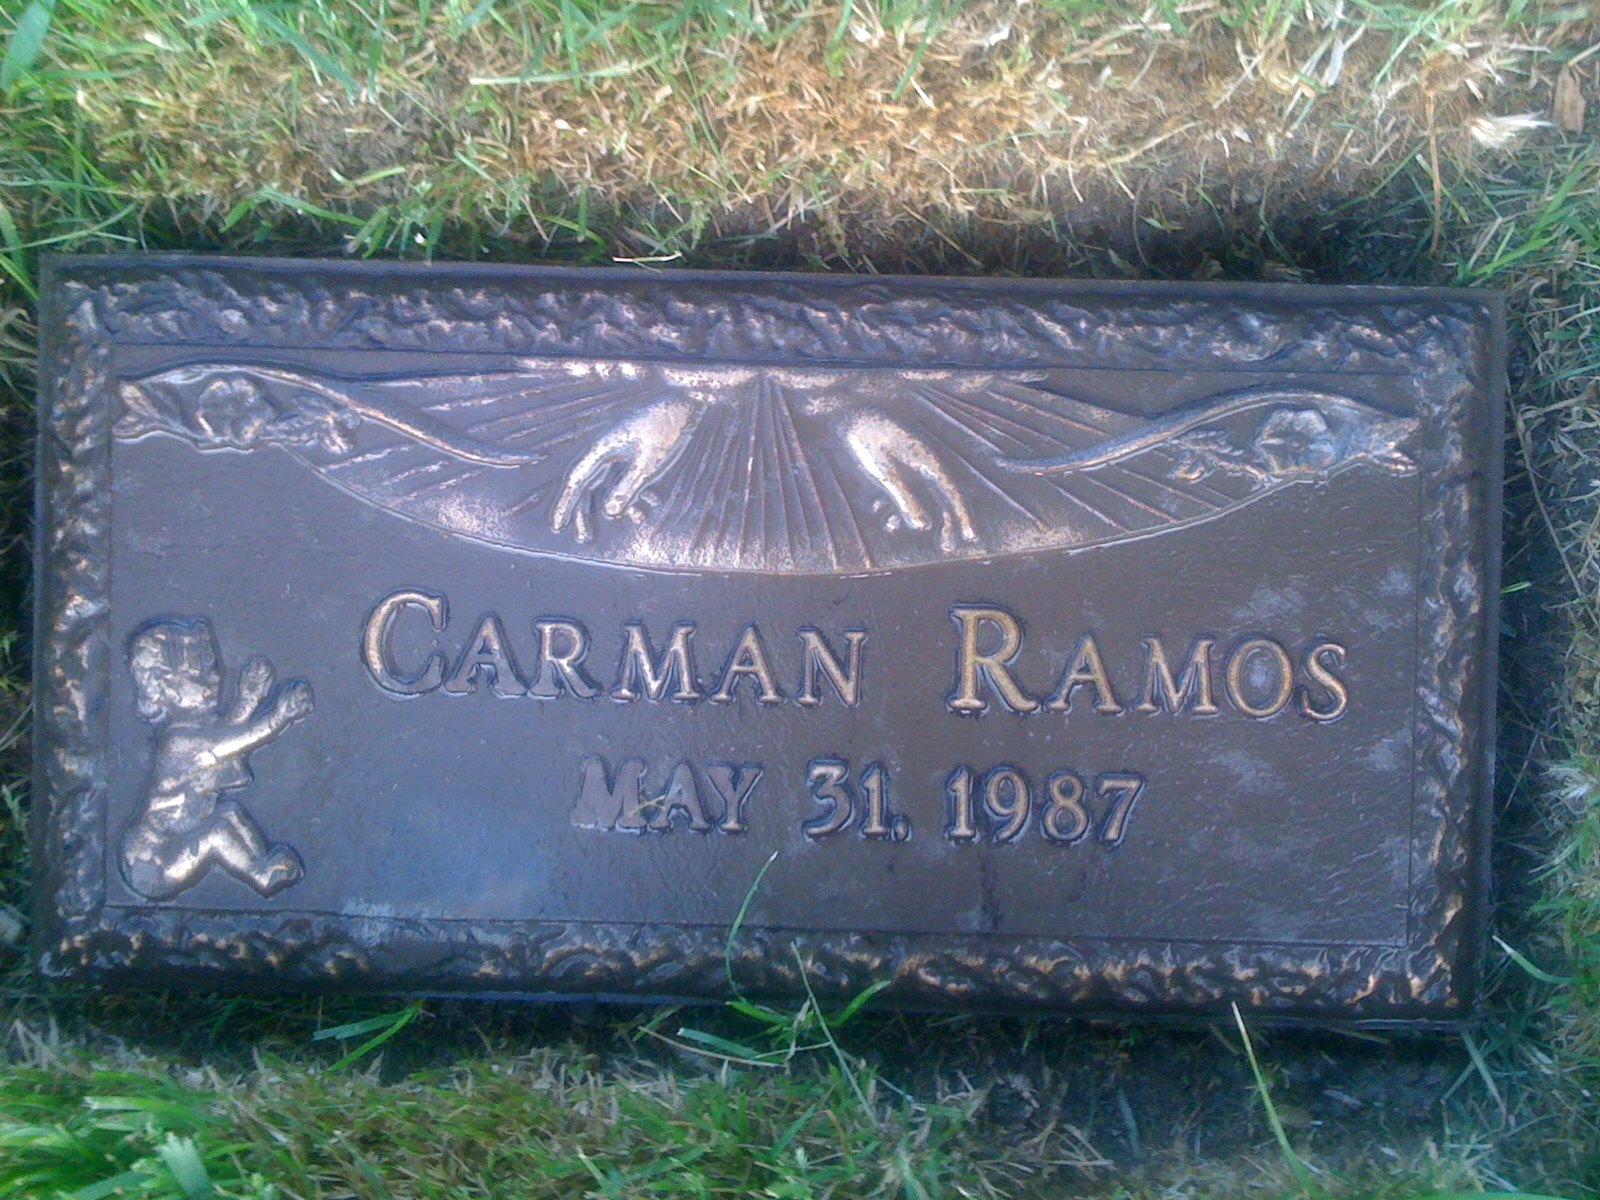 Carman Ramos